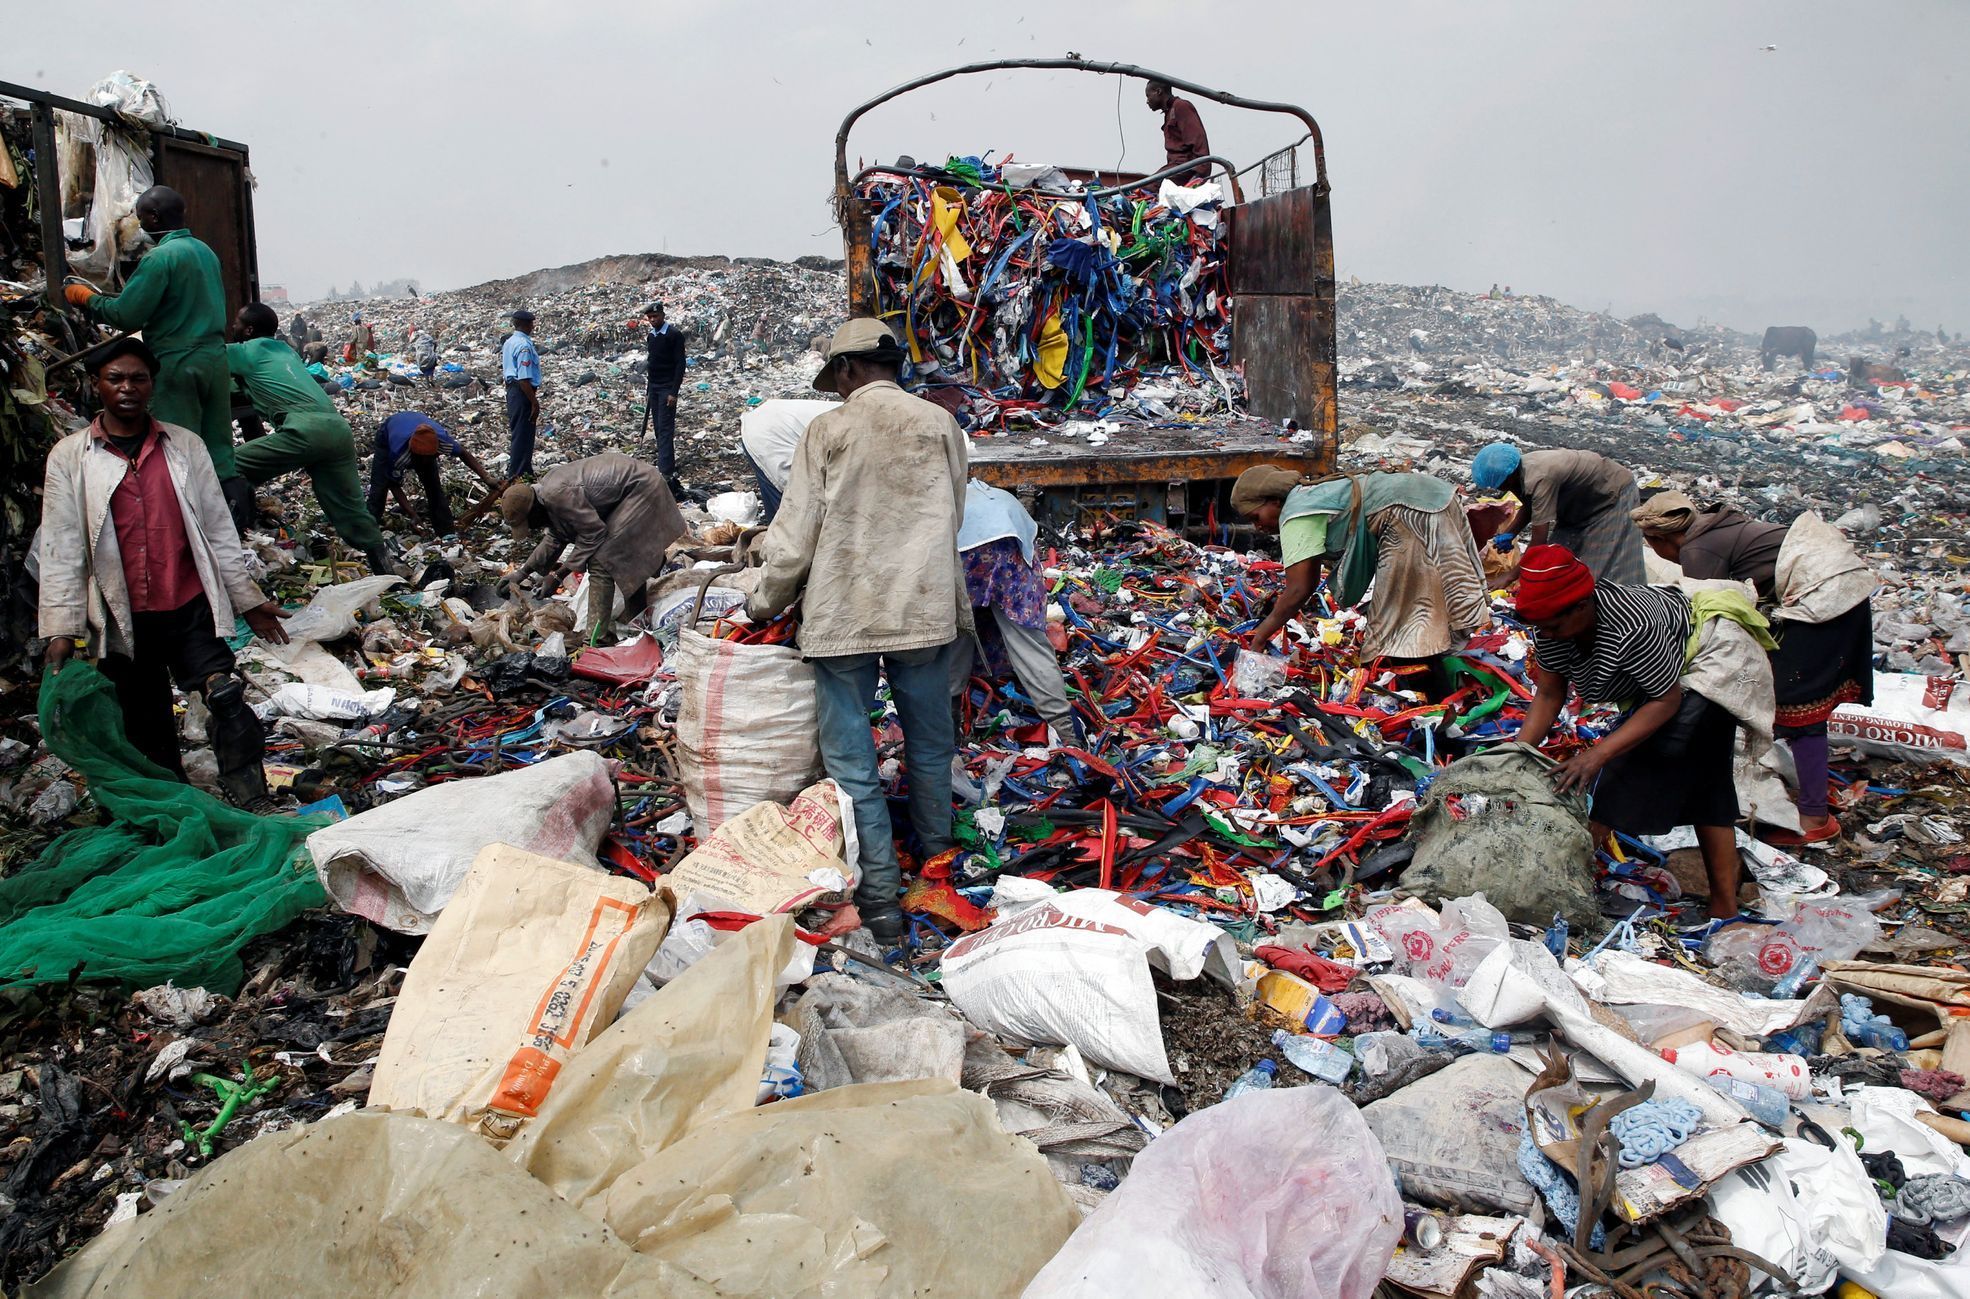 Keňa - problémy s plastikovým odpadem